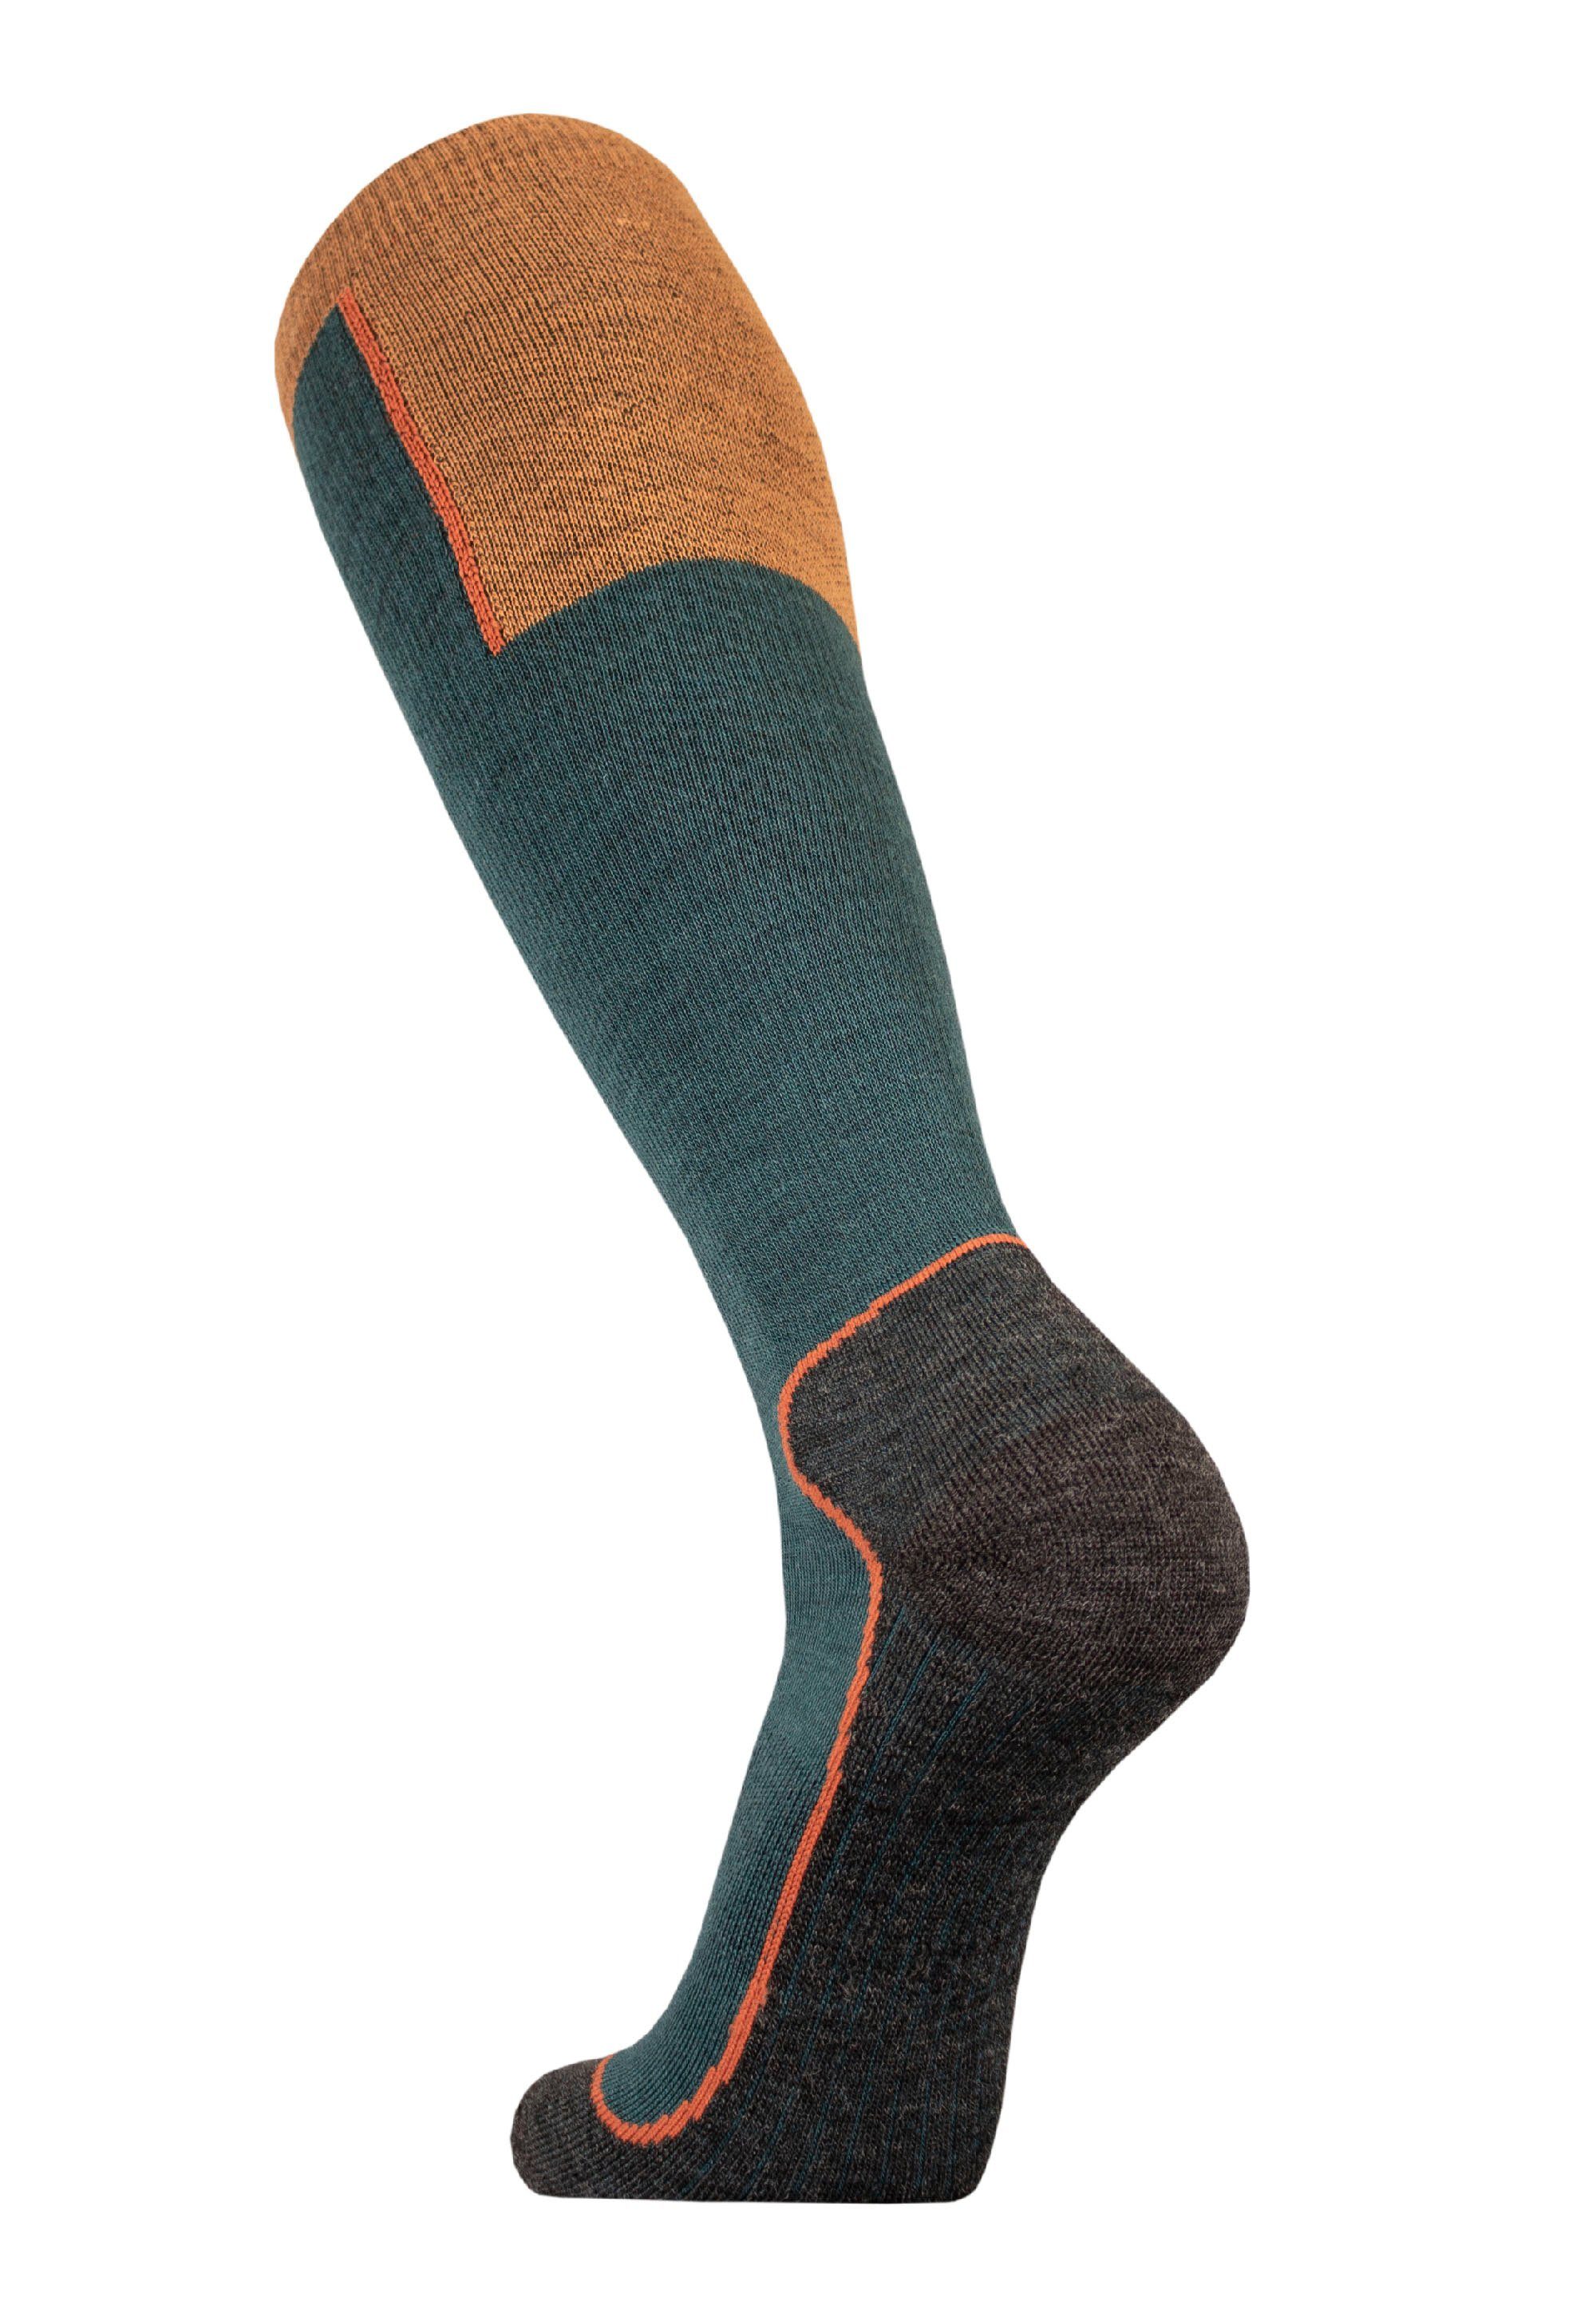 UphillSport Socken OUNA (1-Paar) mit grün-orange Struktur mehrlagiger